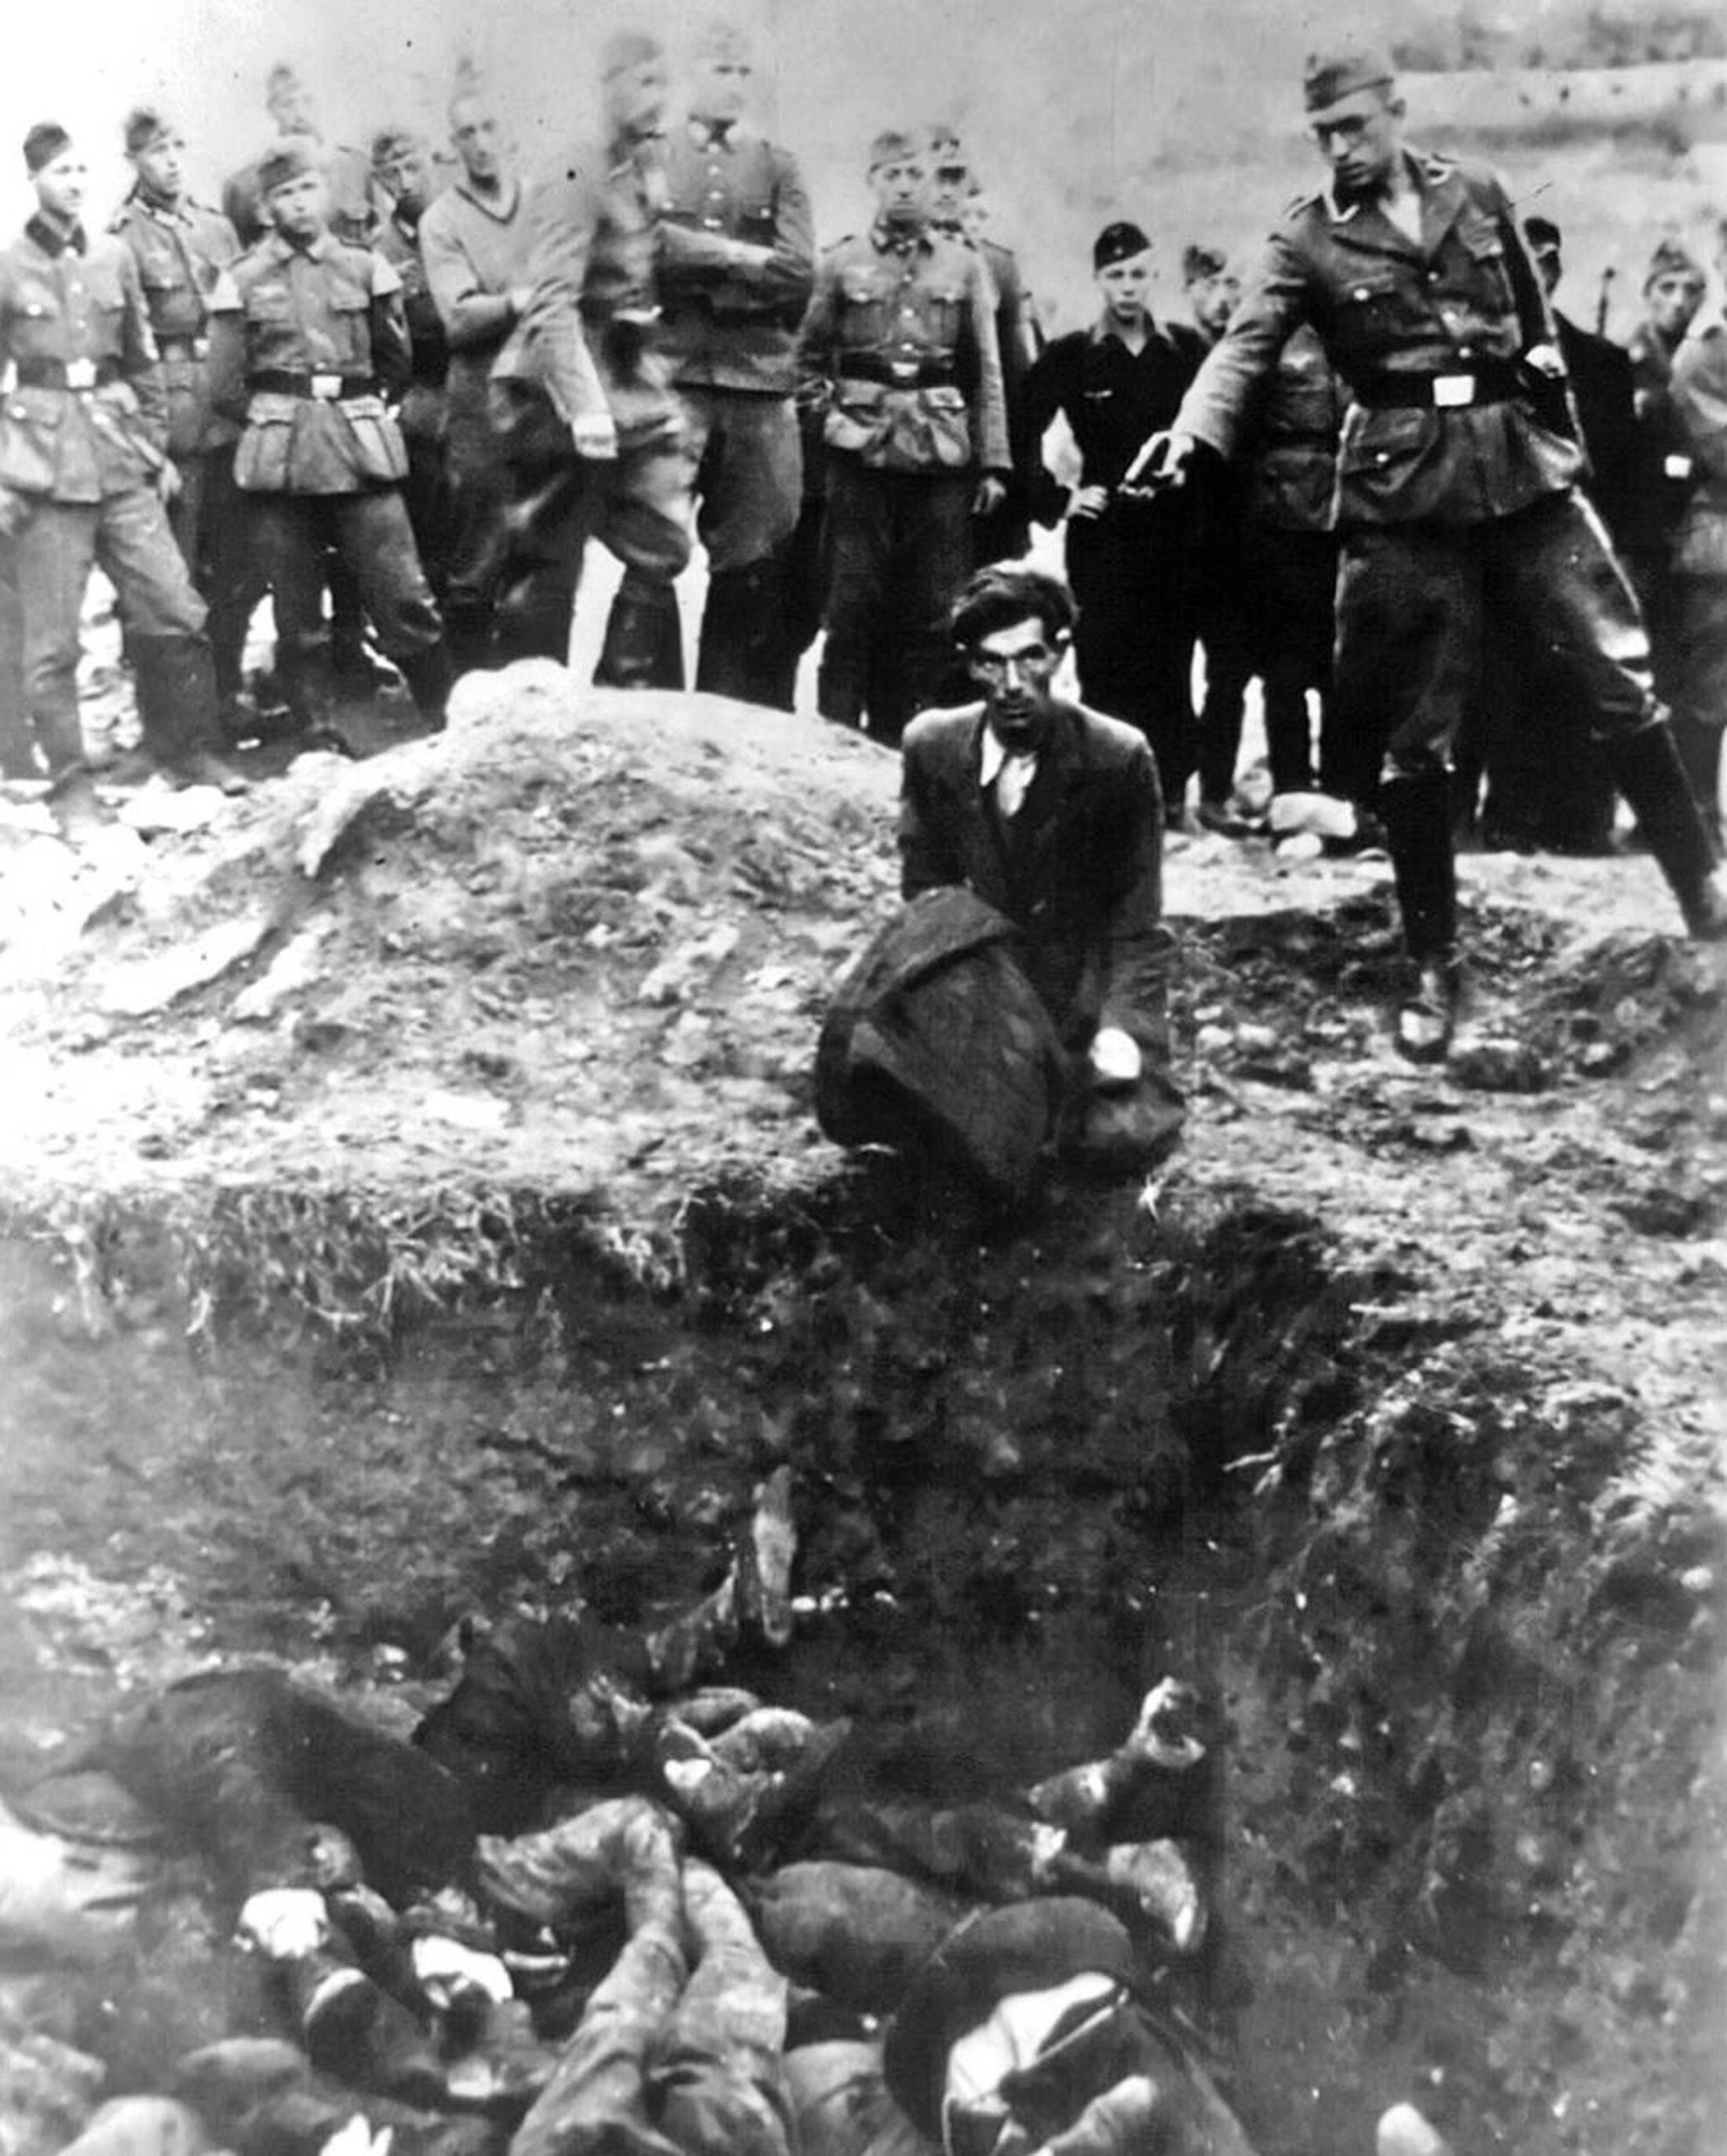 Un oficial nazi asesinando a un polaca judío. Los integrantes del Batallón 101 eran de clase obrera y casi ninguno había tenido importante actuación en el partido nazi antes de participar en las masacres